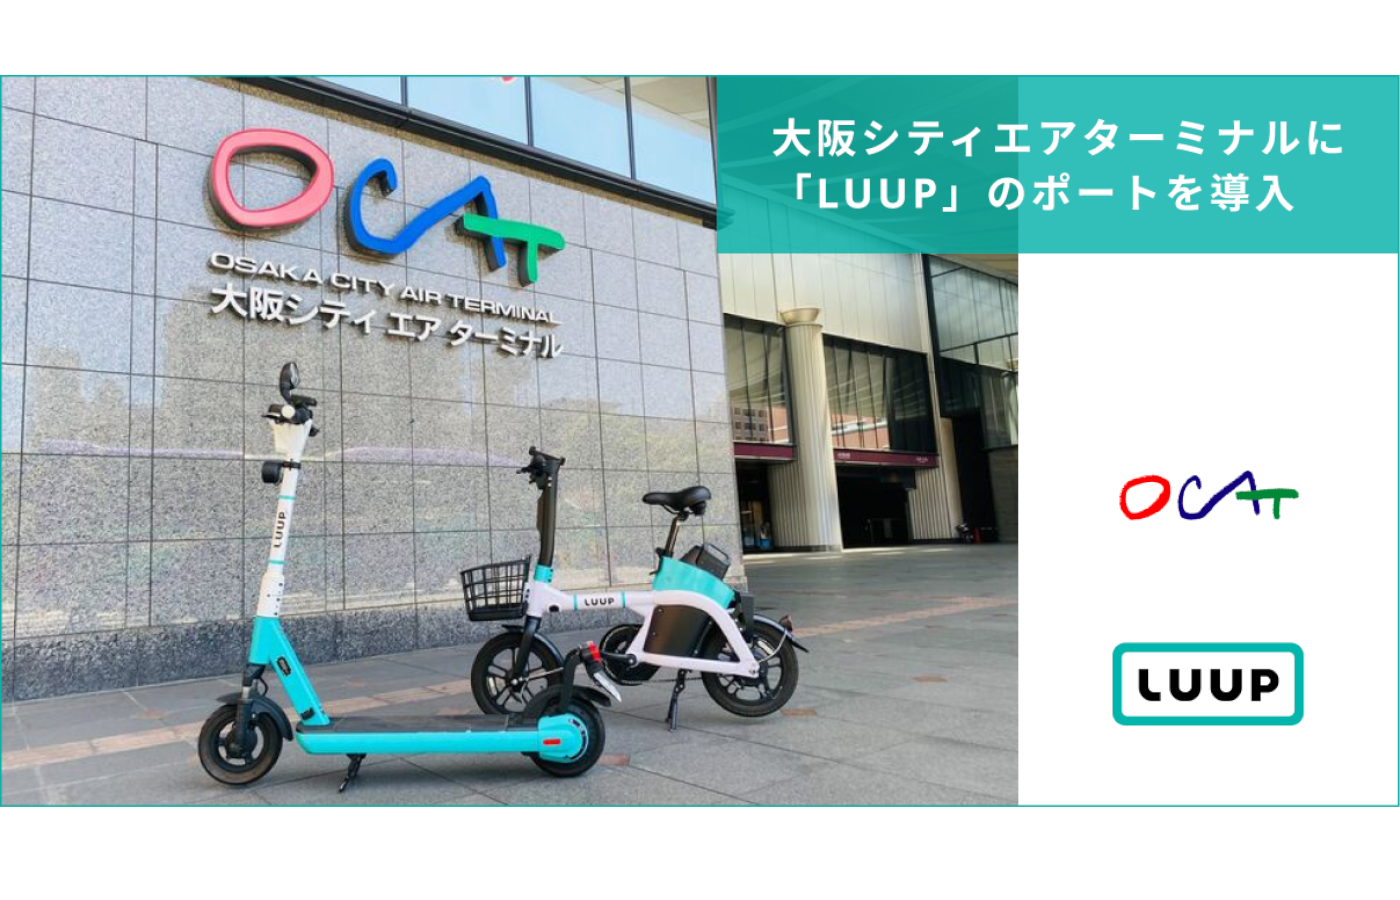 電動マイクロモビリティシェアリングサービス「LUUP」、大阪シティエアターミナルにポートを導入